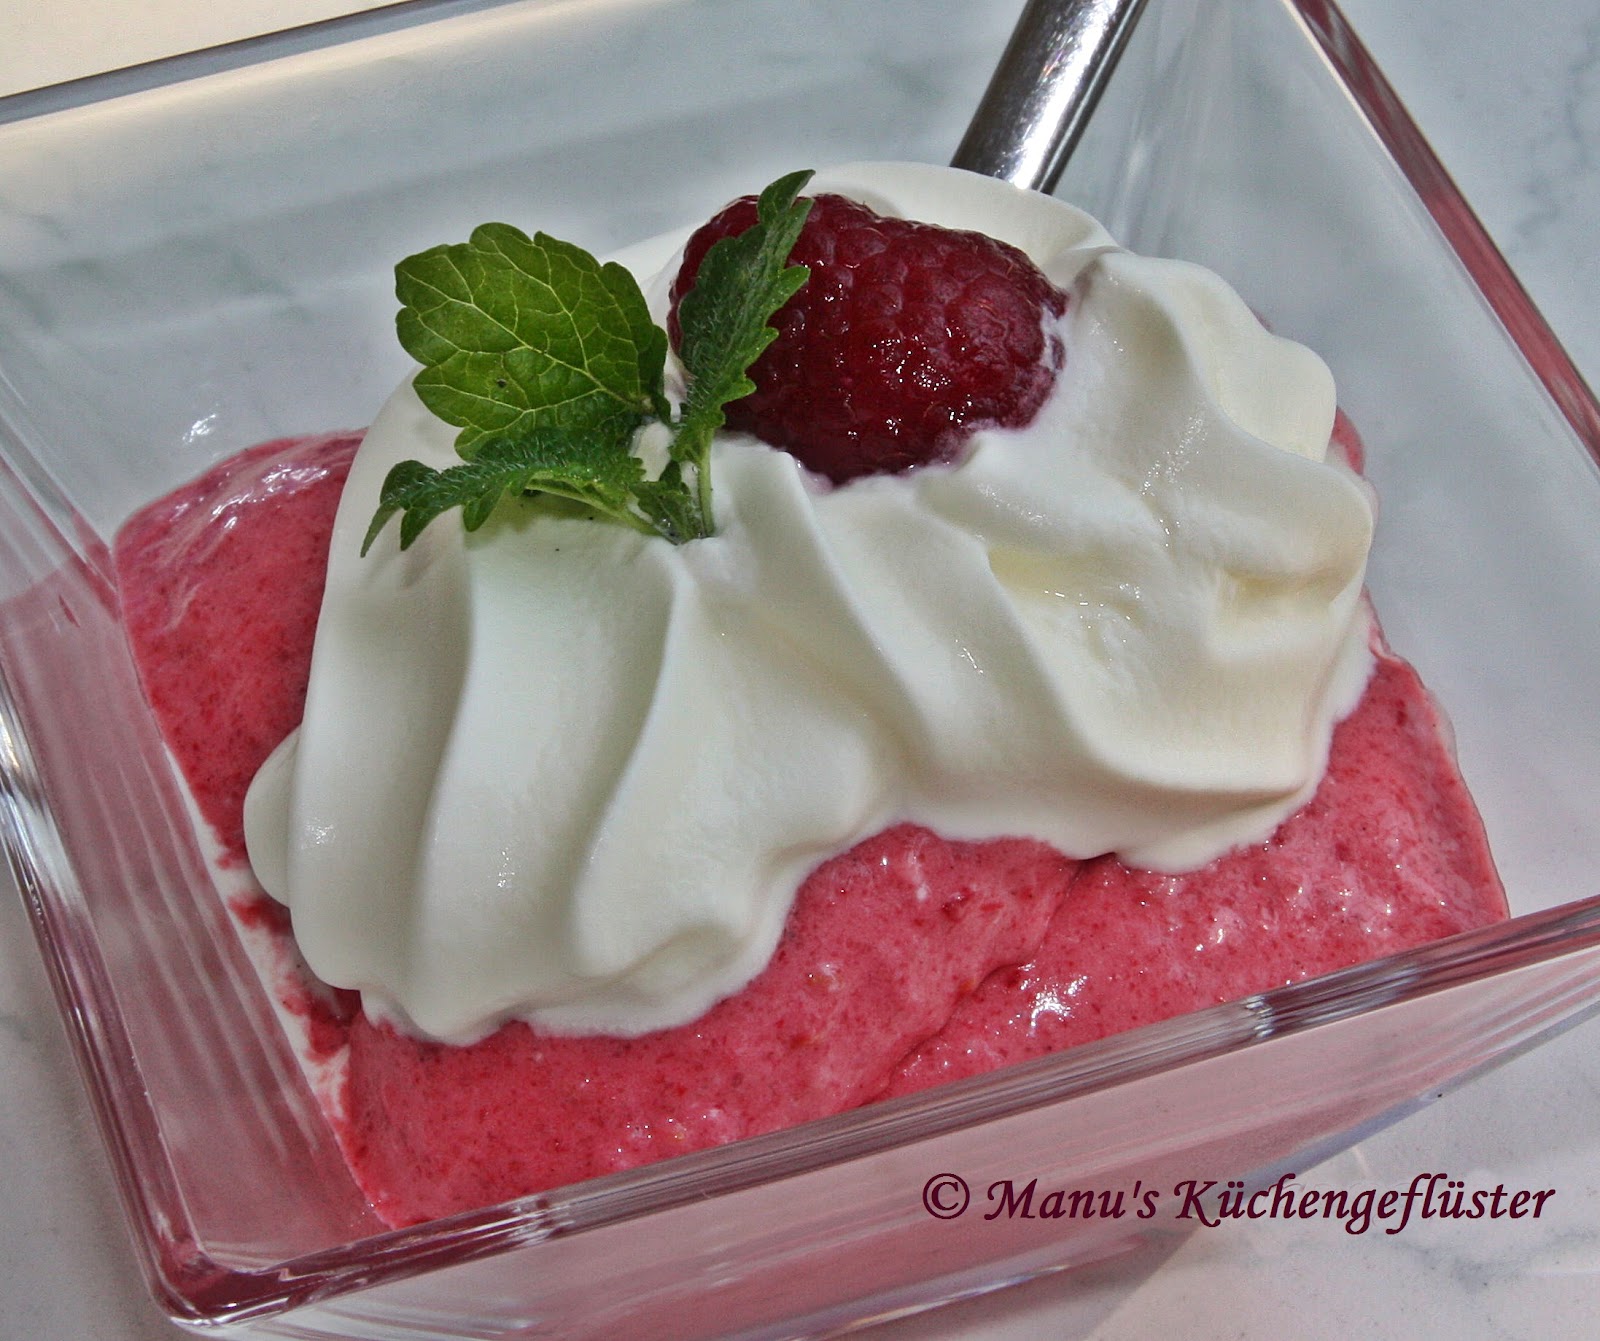 Manus Küchengeflüster: Himbeer-Eis mit Joghurt